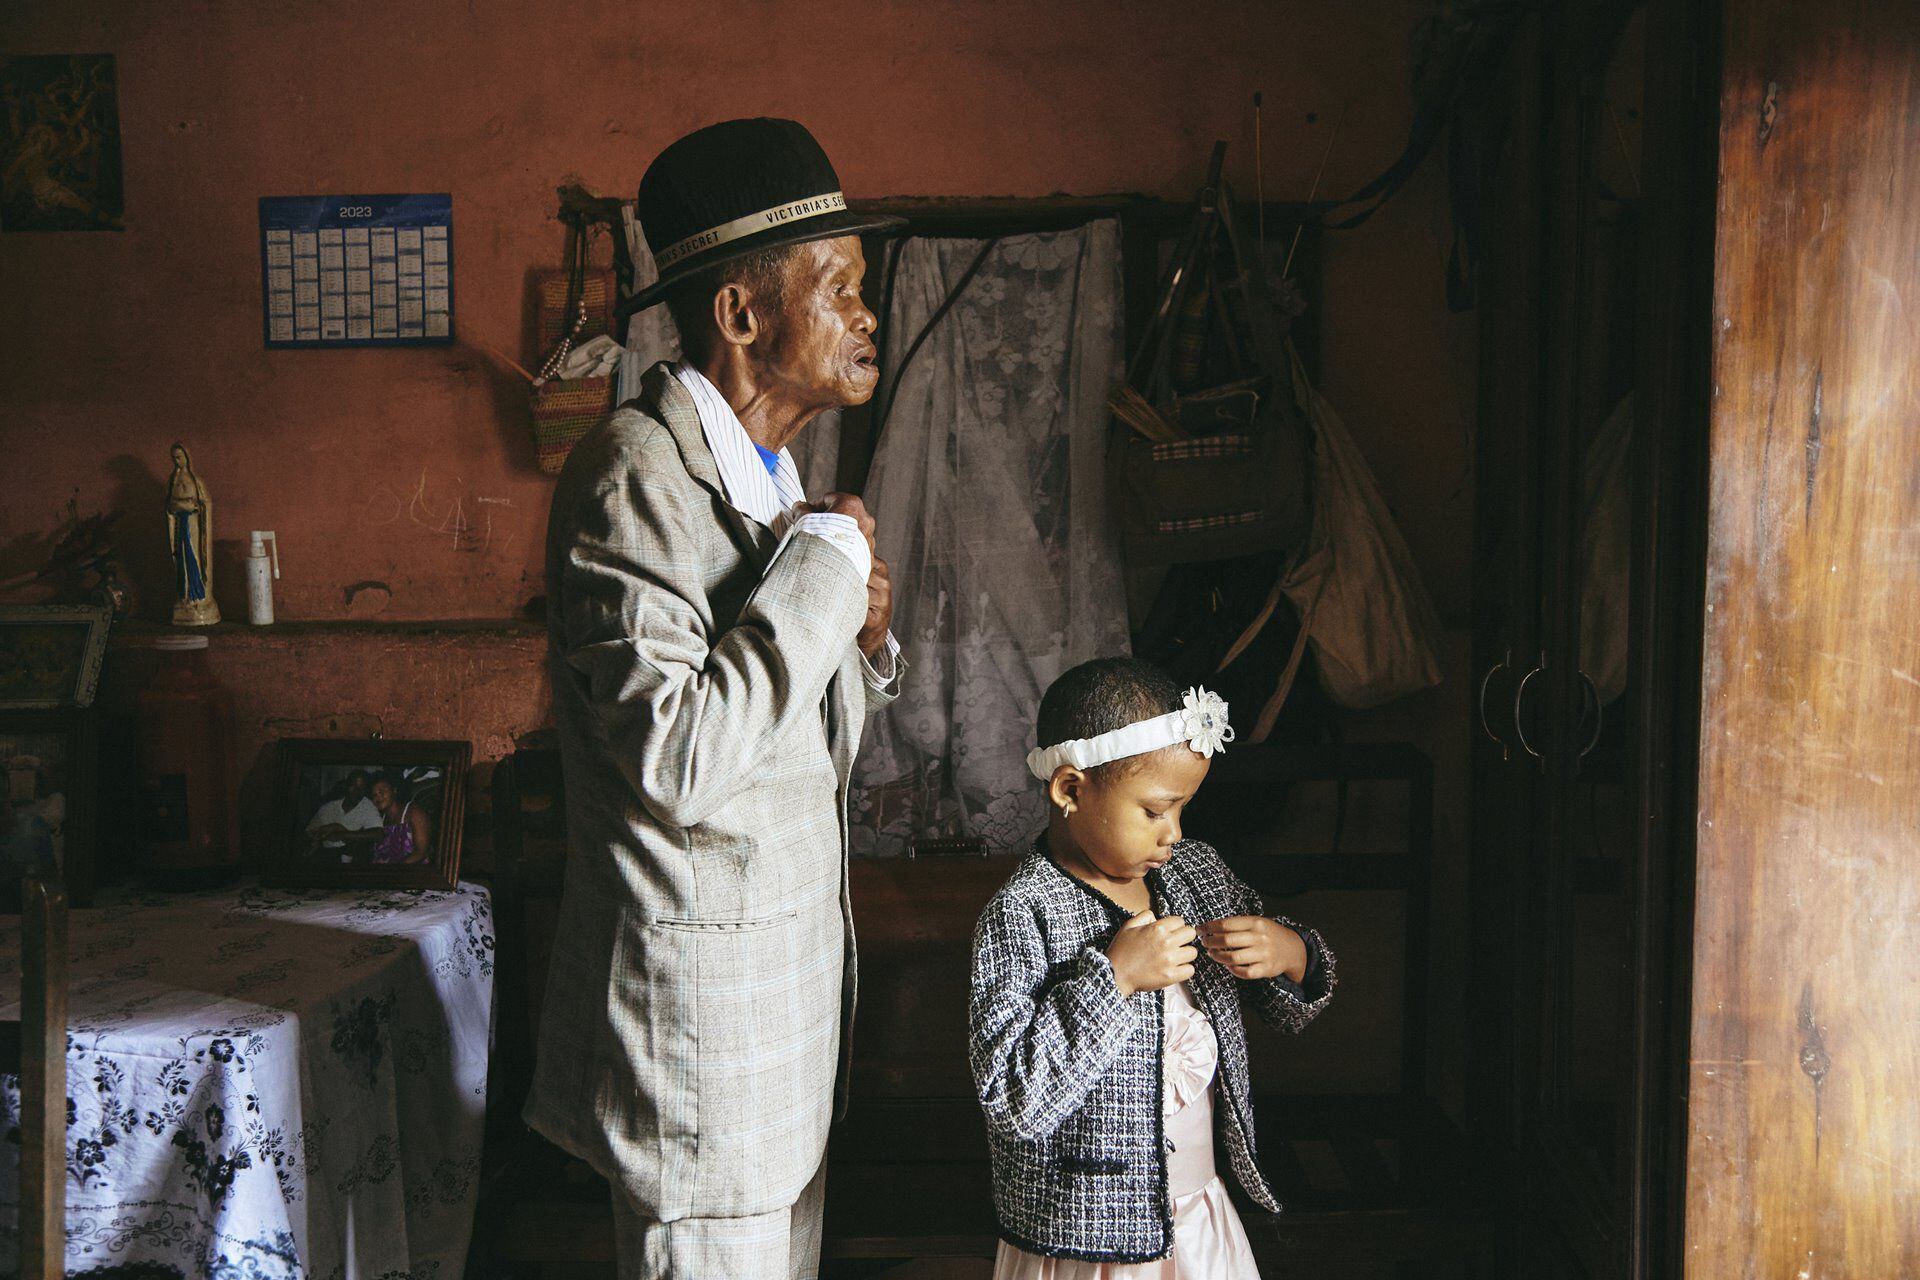 La fotógrafa de GEO, Lee-Ann Olwage, de Sudáfrica ganó la categoría de historia del año con imágenes que documentan la demencia en Madagascar. Dealbh: Lee-Ann Olwage